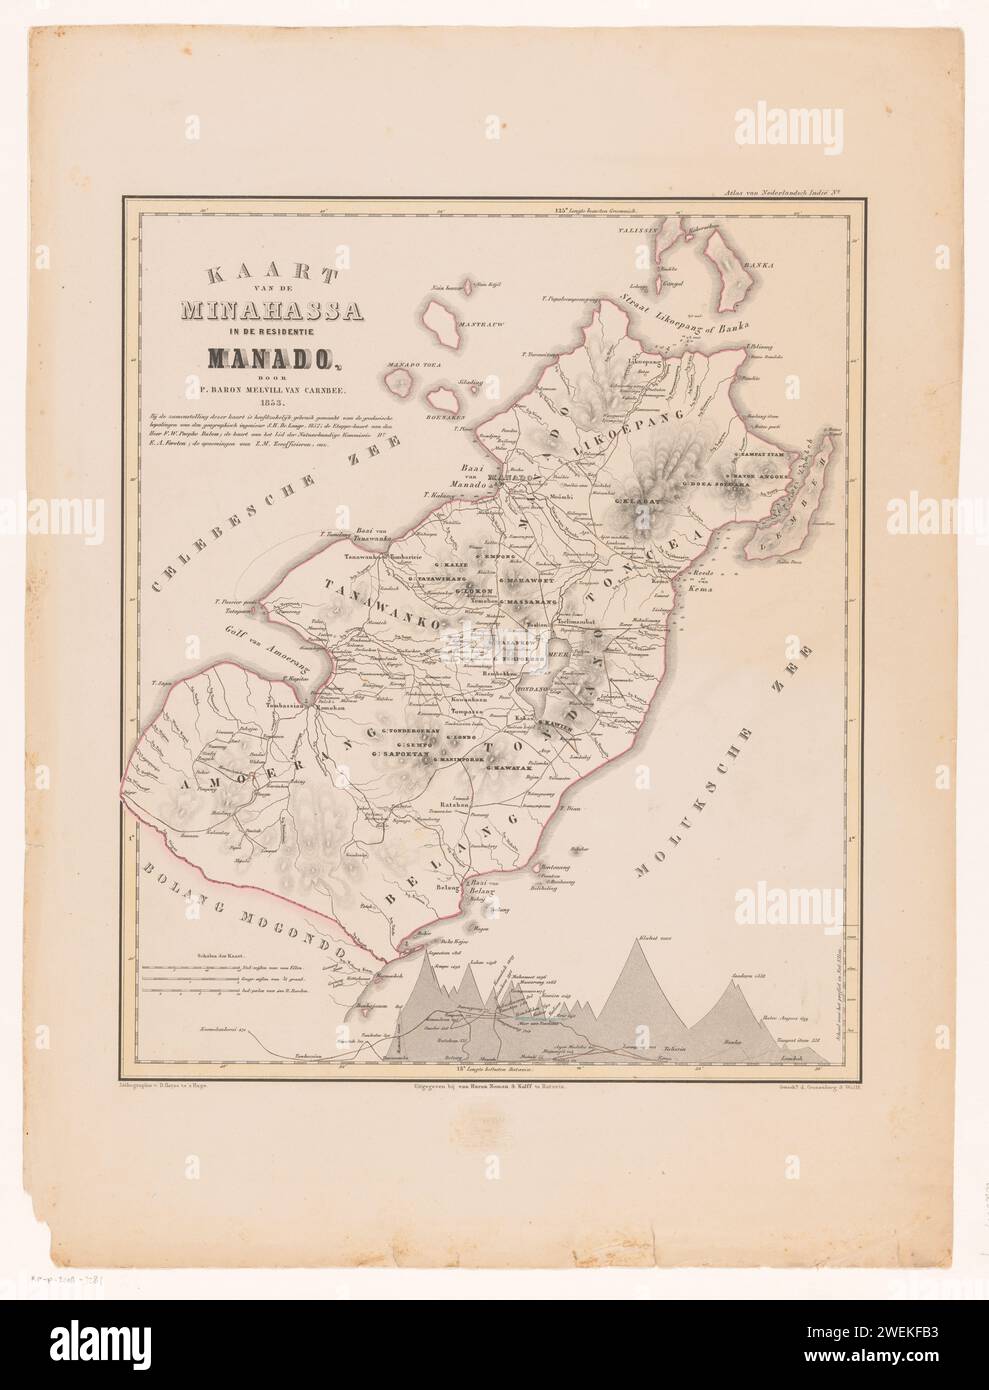 RP-P-2018-3282, Desiré Heyse, Pieter Baron Melvill van Carnbee, 1853 stampa mappa MINASSA con una distribuzione dei gradi e una mappa dell'altezza in basso a destra. Cartine cartacee, atlanti Manado Foto Stock